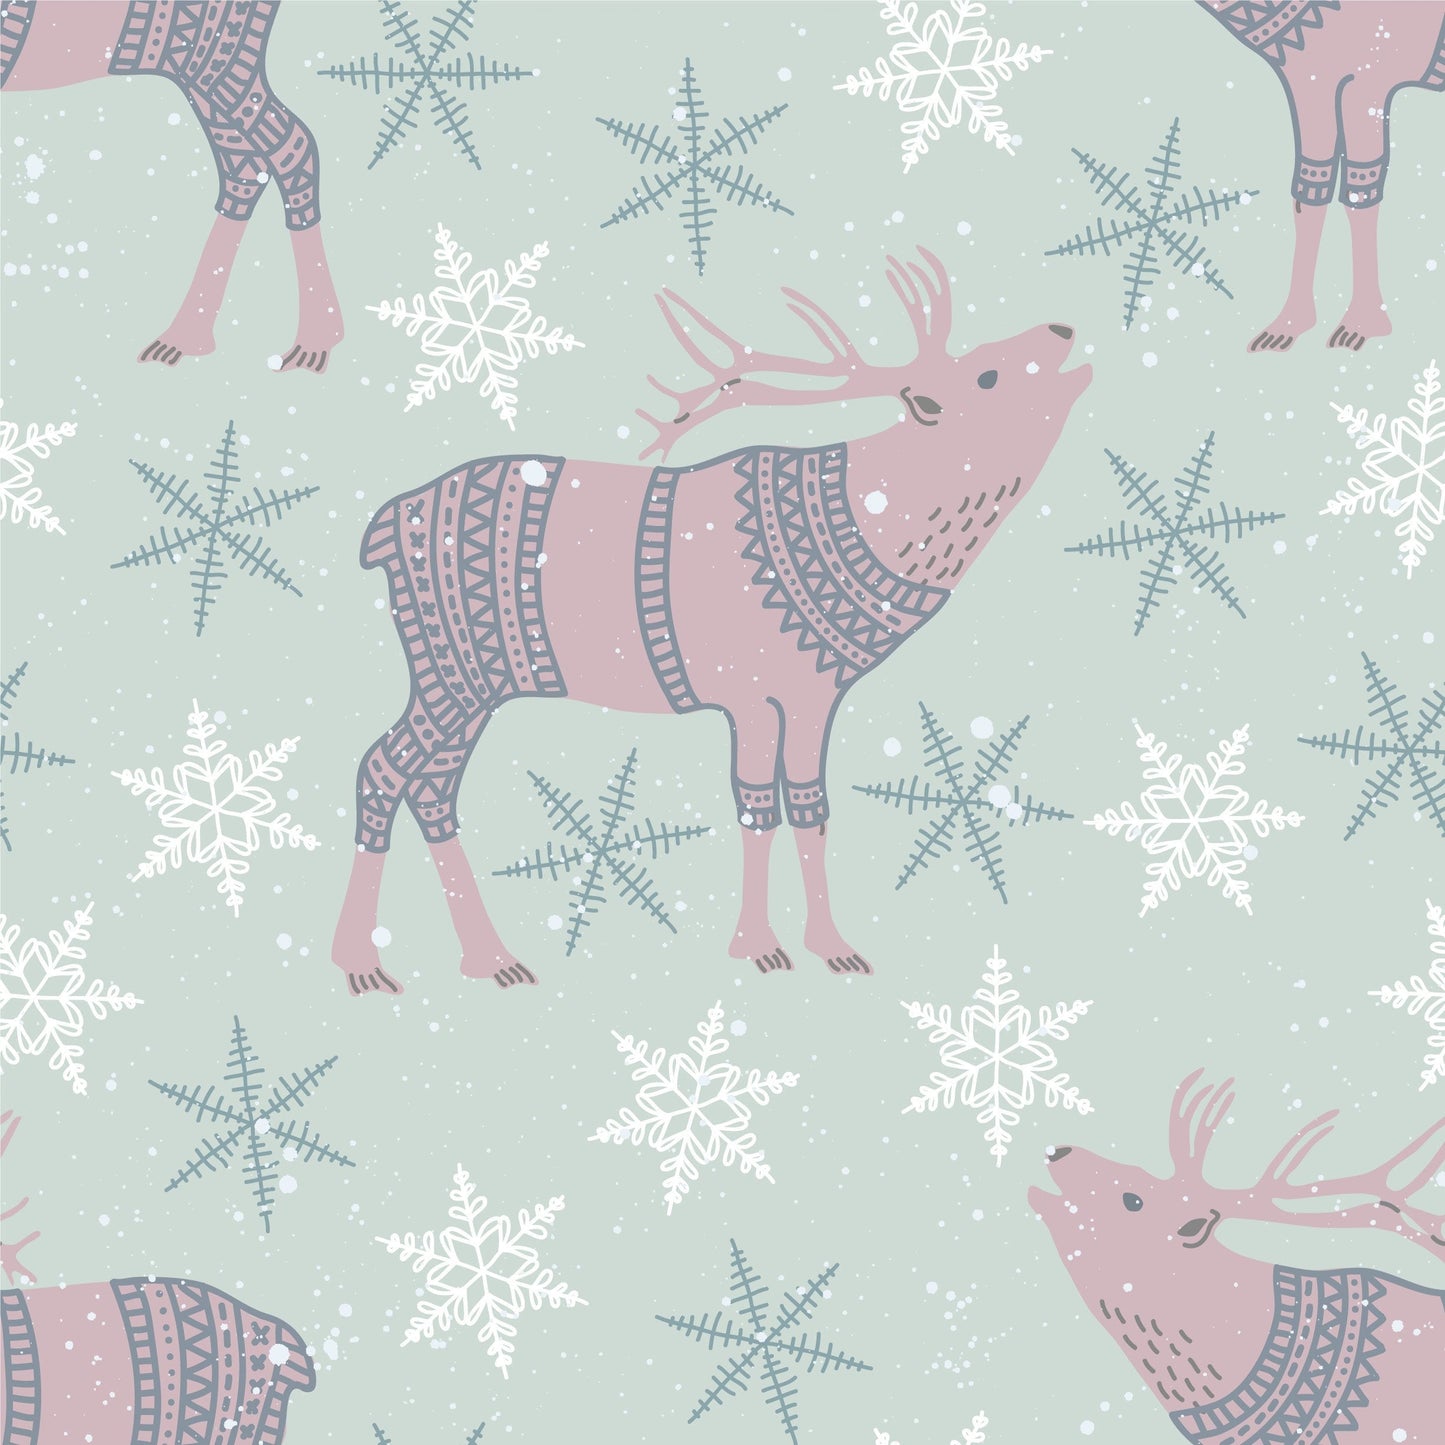 Reindeer & Snowflakes Vinyl Sticker Wrap